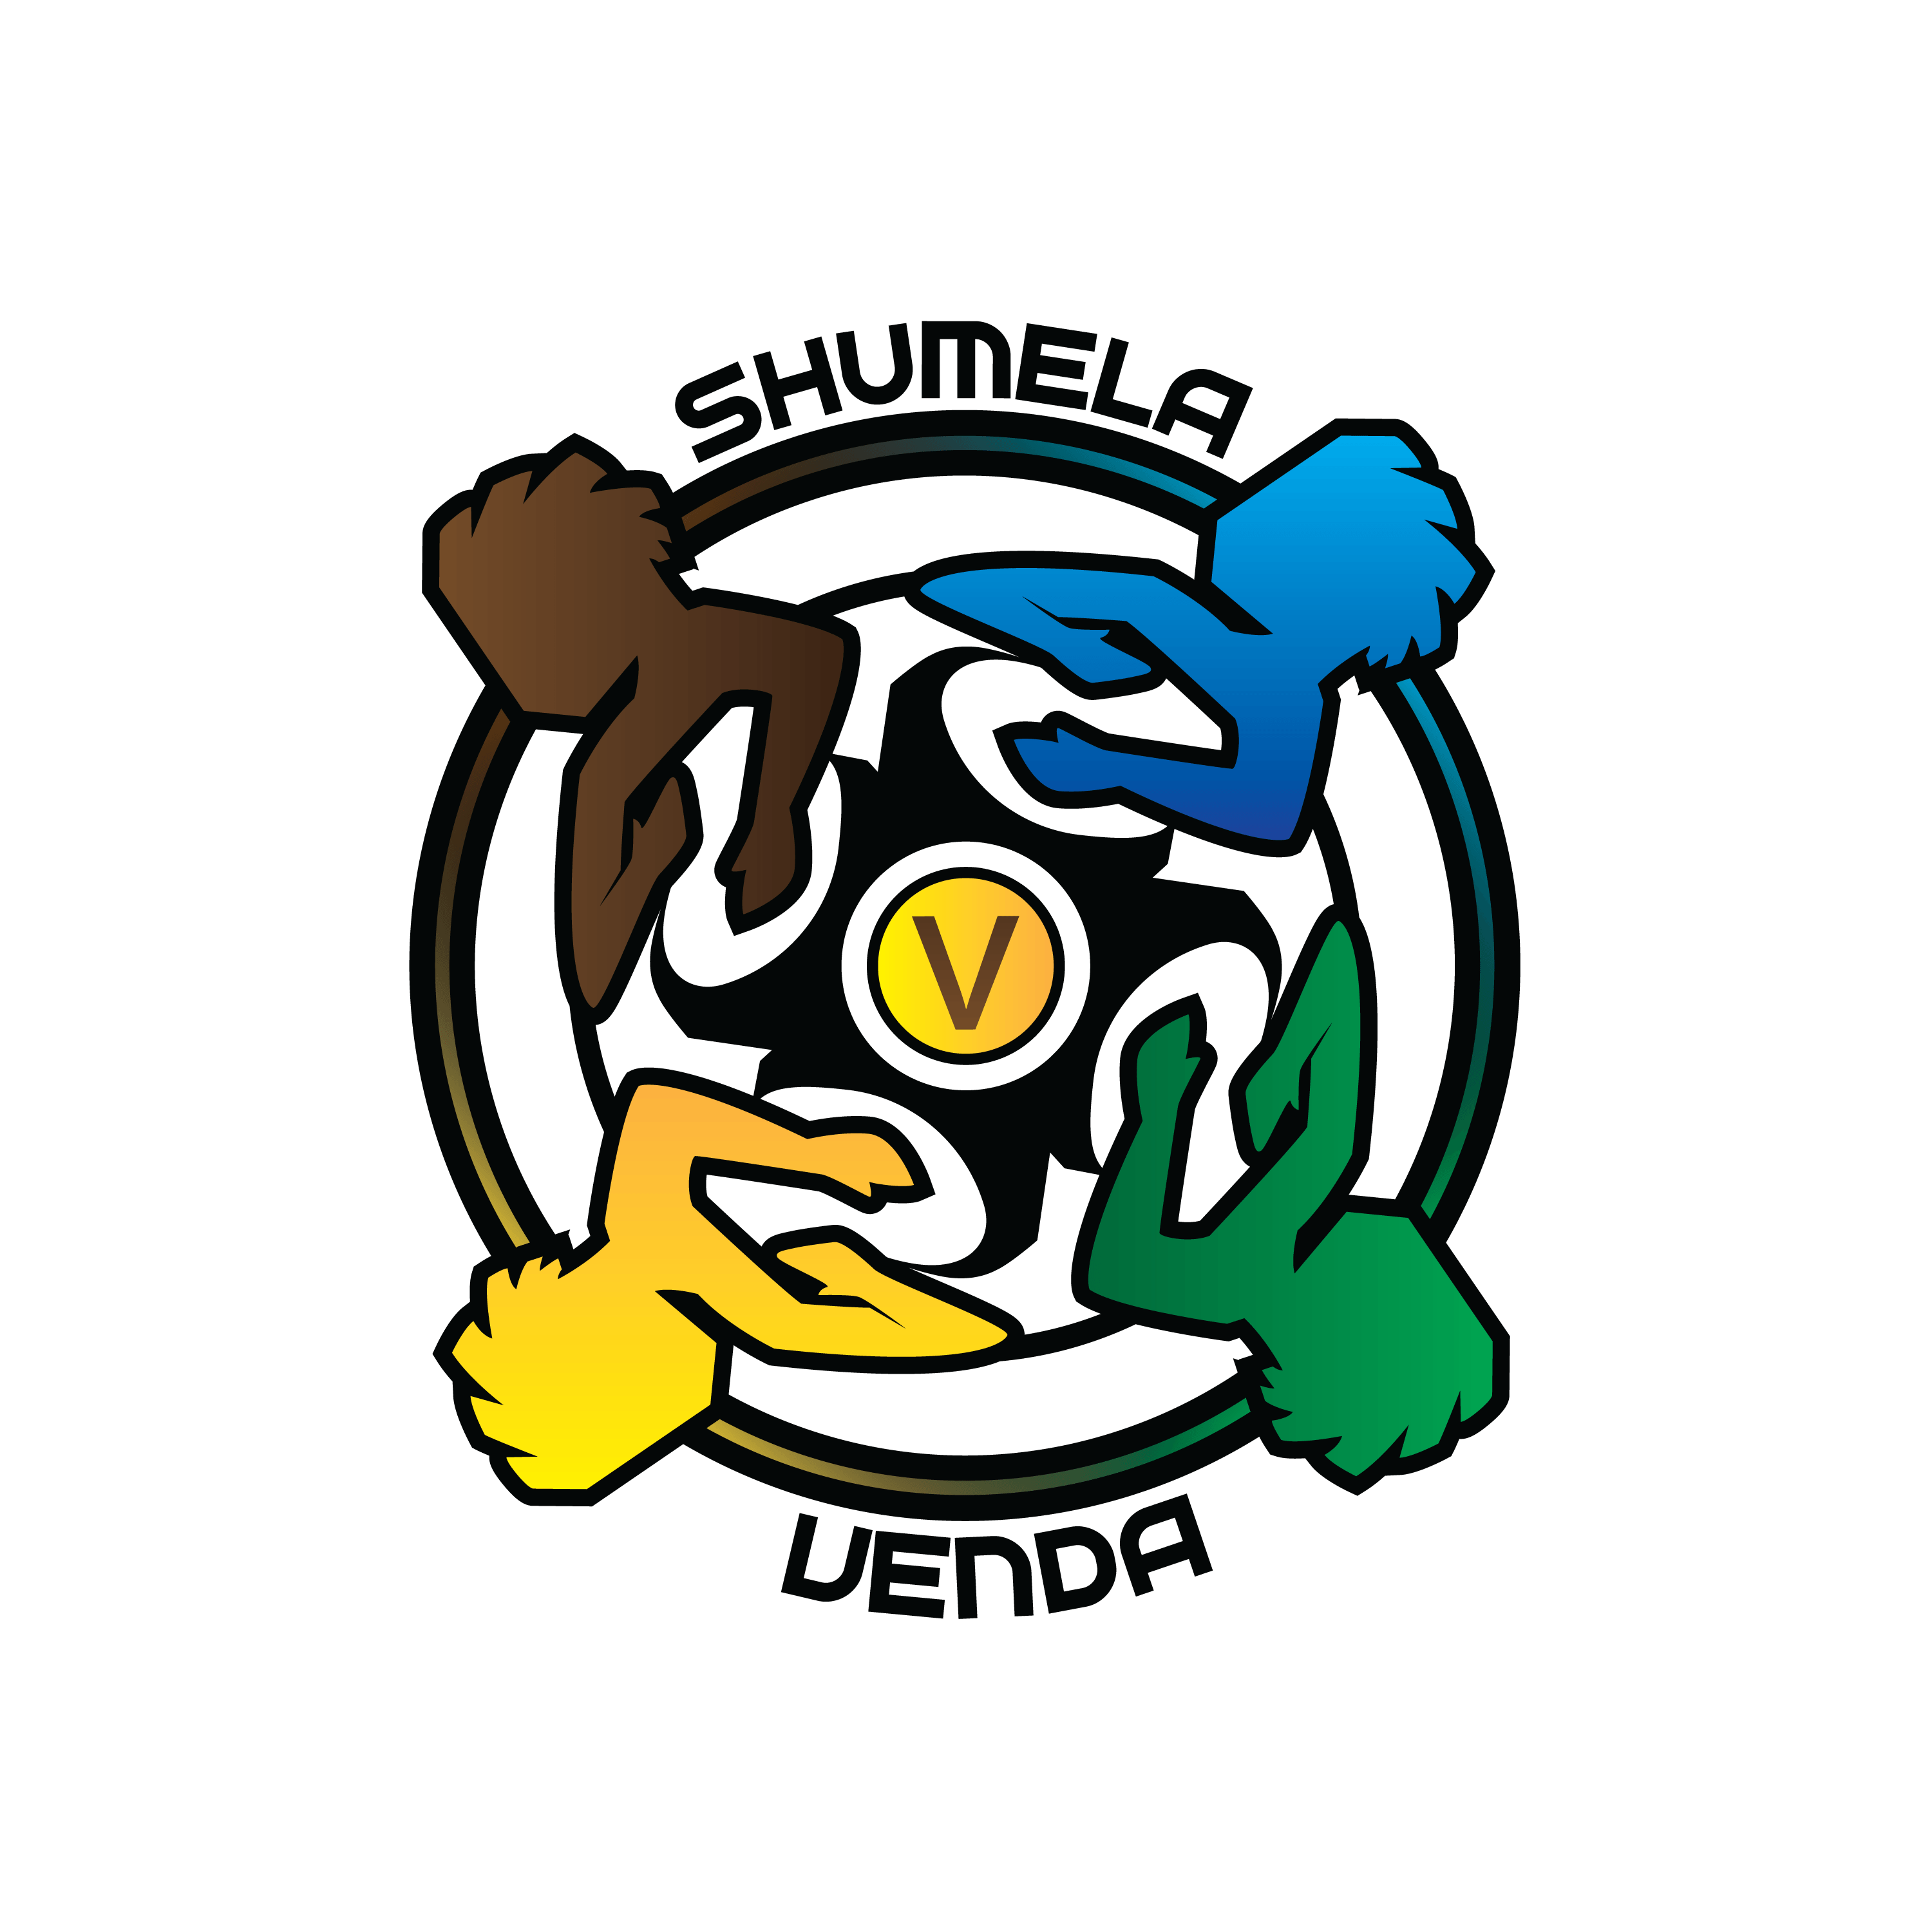 Venda Logo - Shumela Venda Logo Large 3000×3000